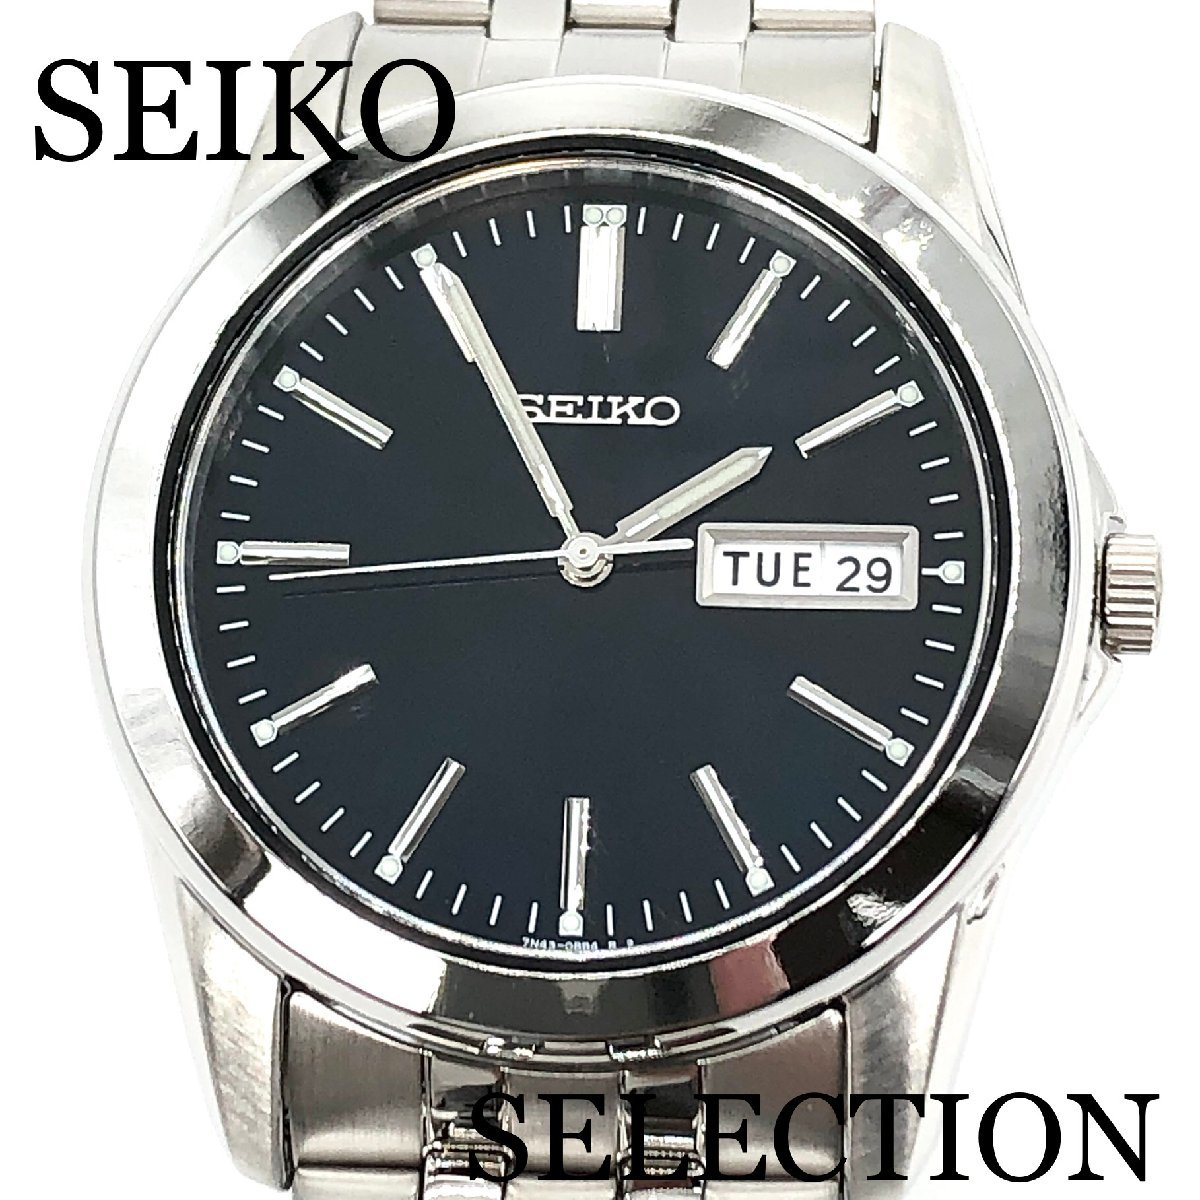 新品正規品『SEIKO SELECTION』セイコー セレクション 腕時計 メンズ SCXC011【送料無料】